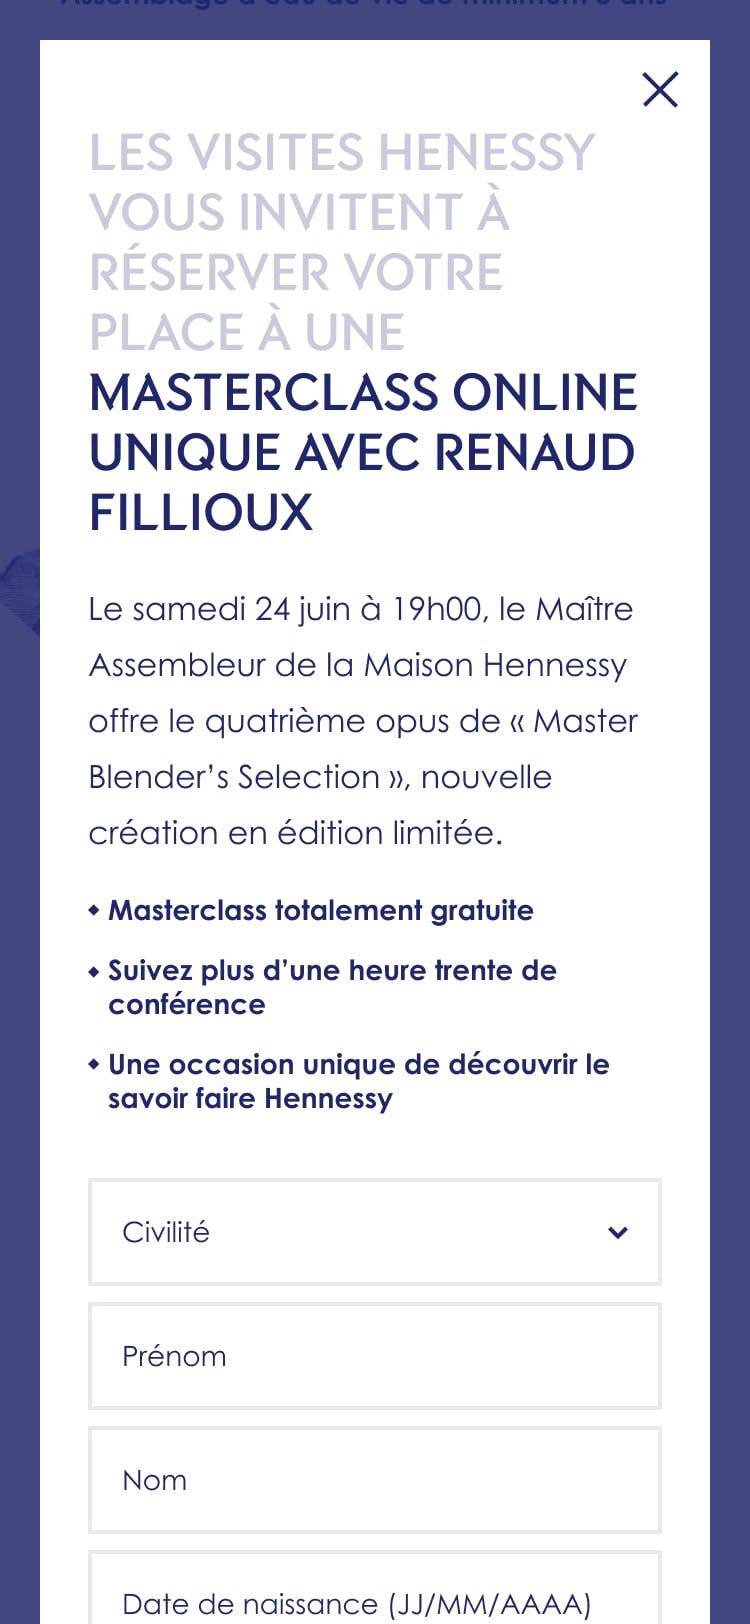 Design of Hennessy Master Blender's N°4 e-commerce platform 